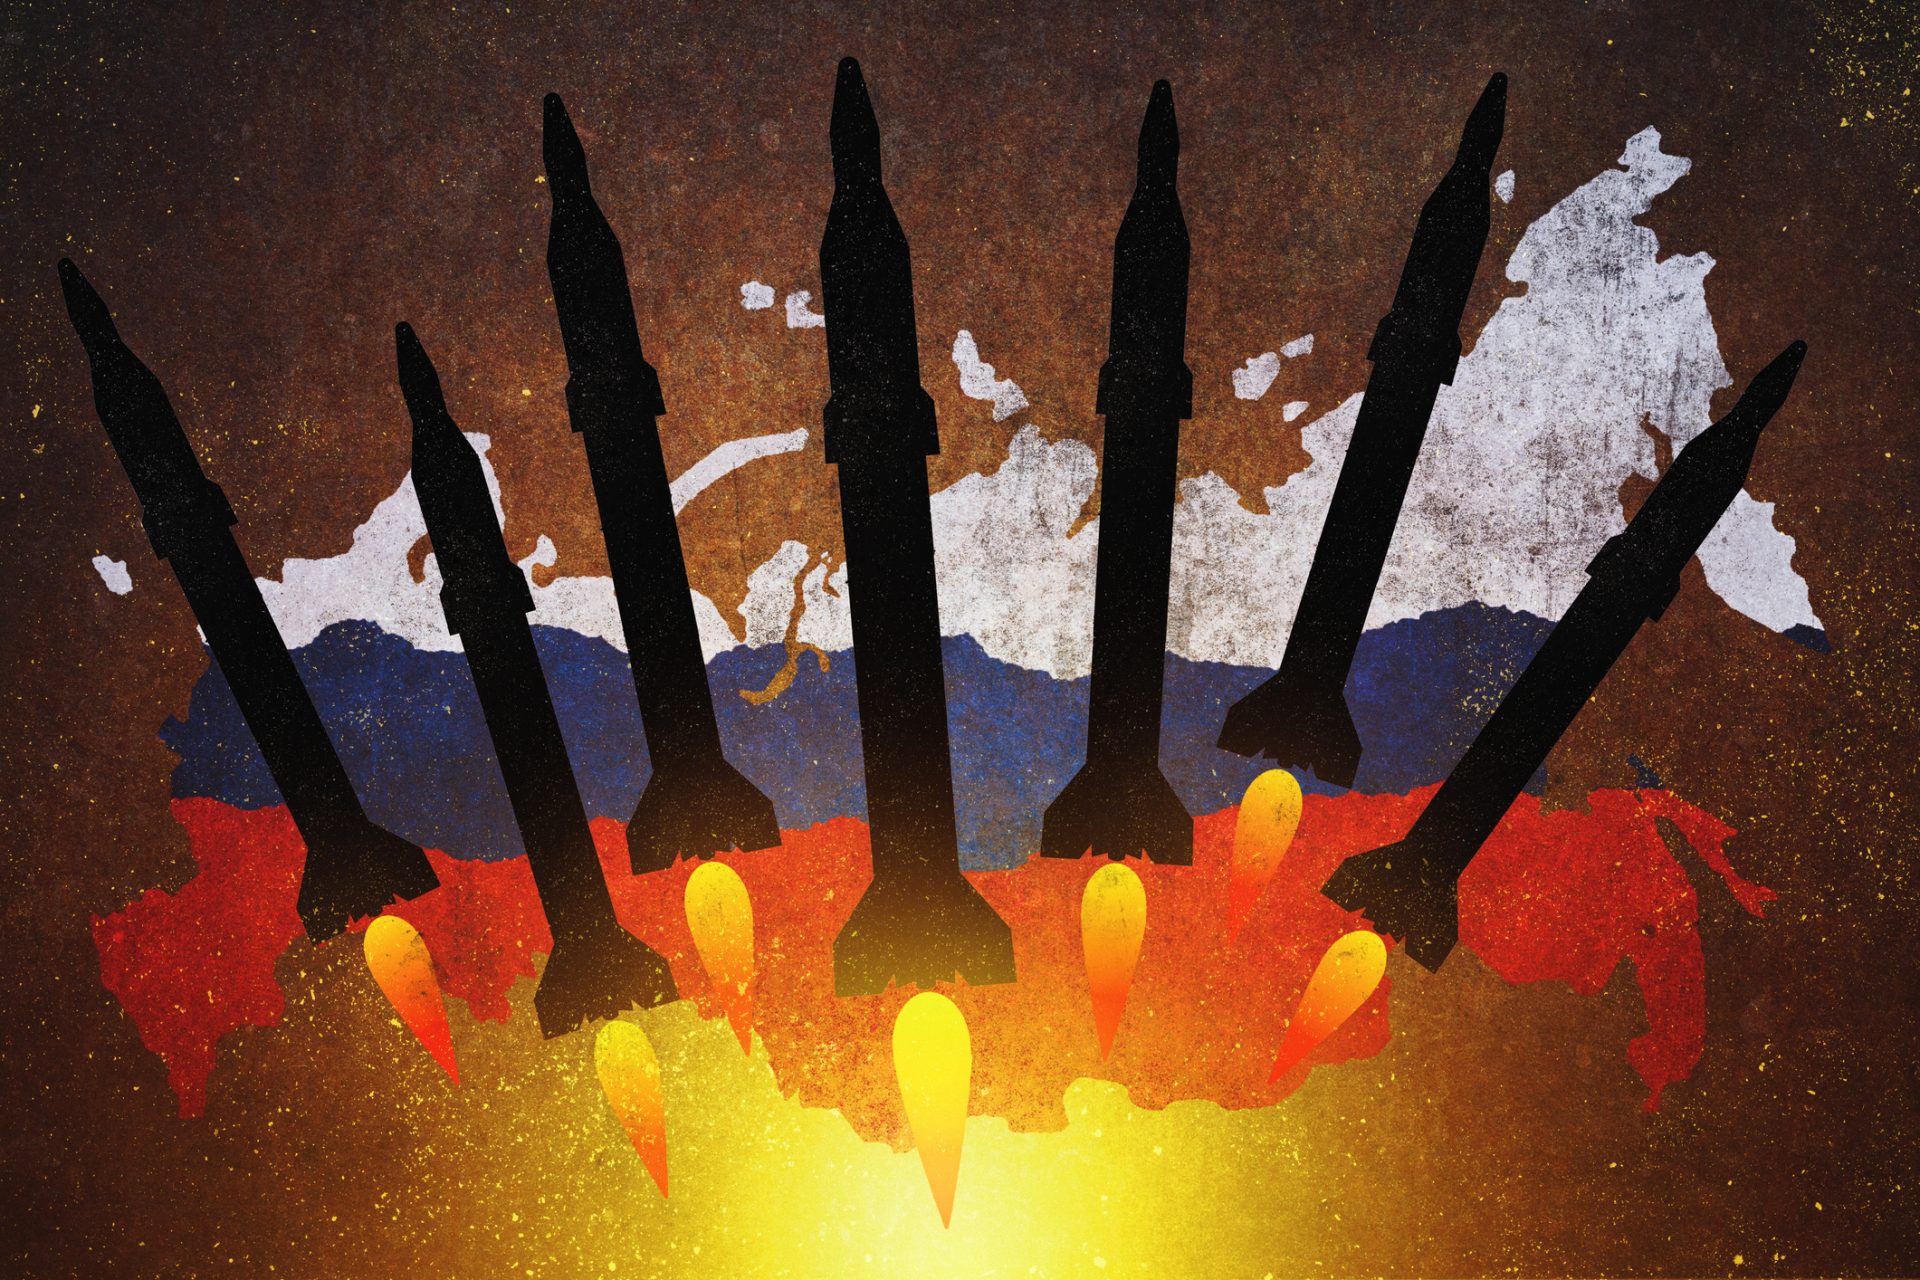 Doctrine nucléaire russe : des documents divulgués récemment révèlent son caractère inquiétant